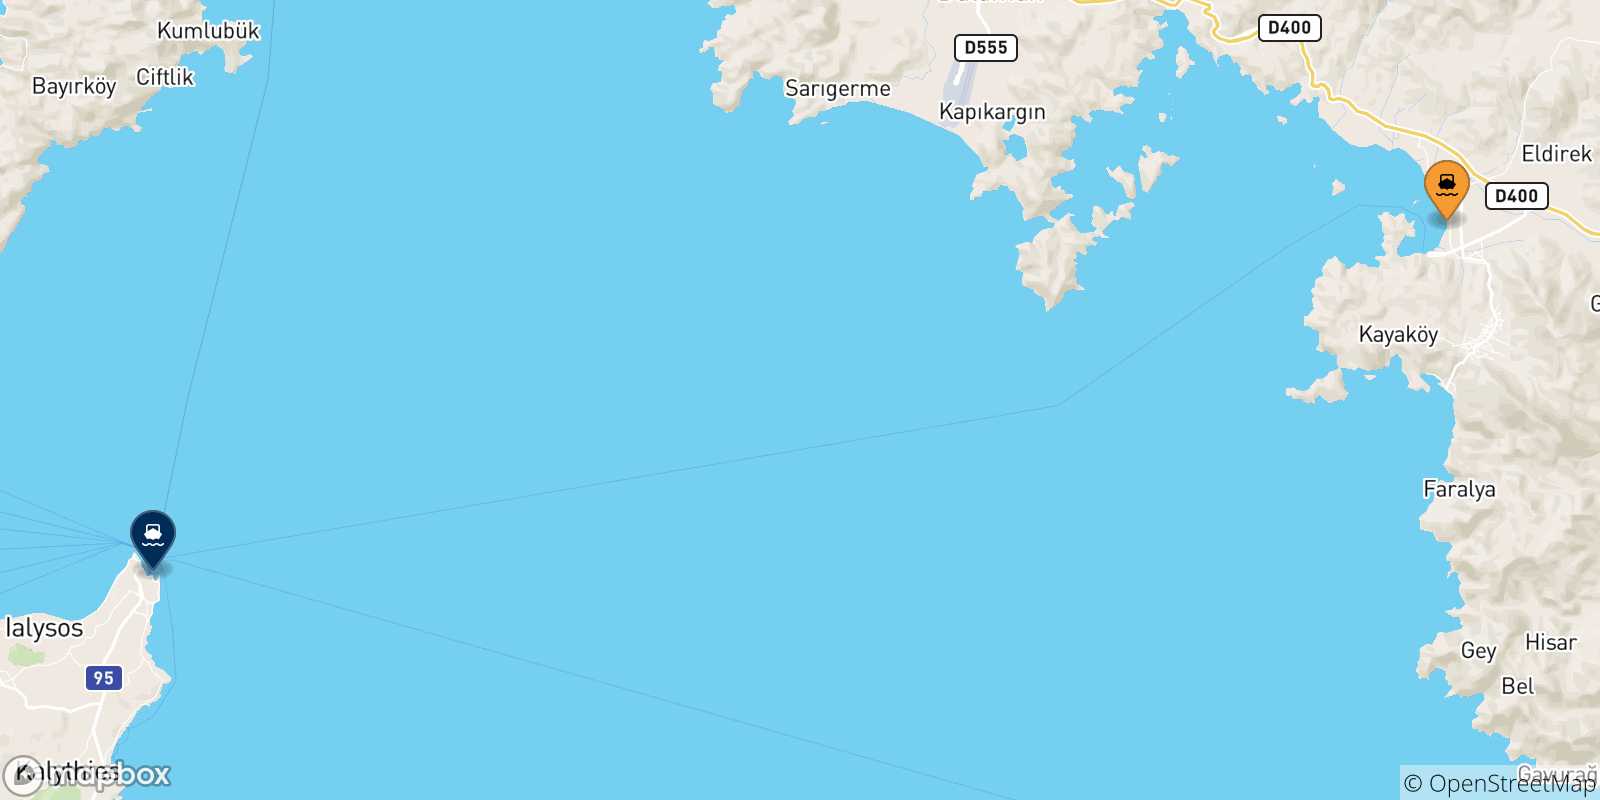 Mappa delle possibili rotte tra Fethiye e le Isole Dodecaneso